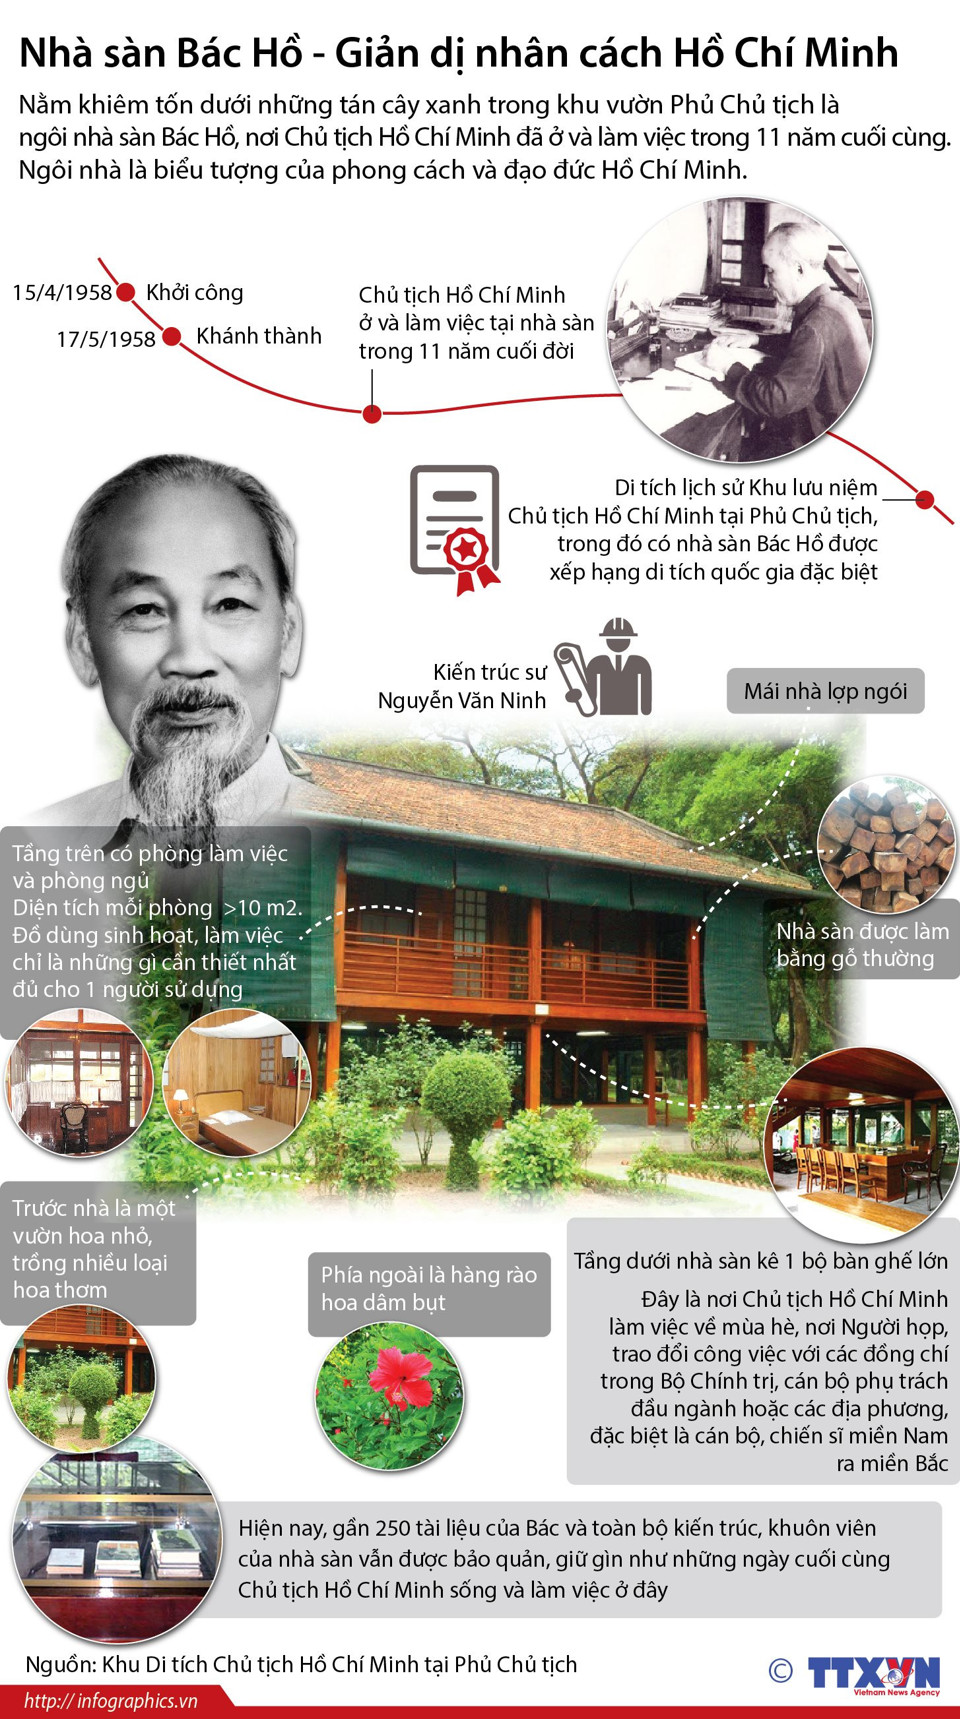 Chủ tịch Hồ Chí Minh: Người sáng lập, lãnh đạo Đảng Cộng sản Việt Nam - Ảnh 11